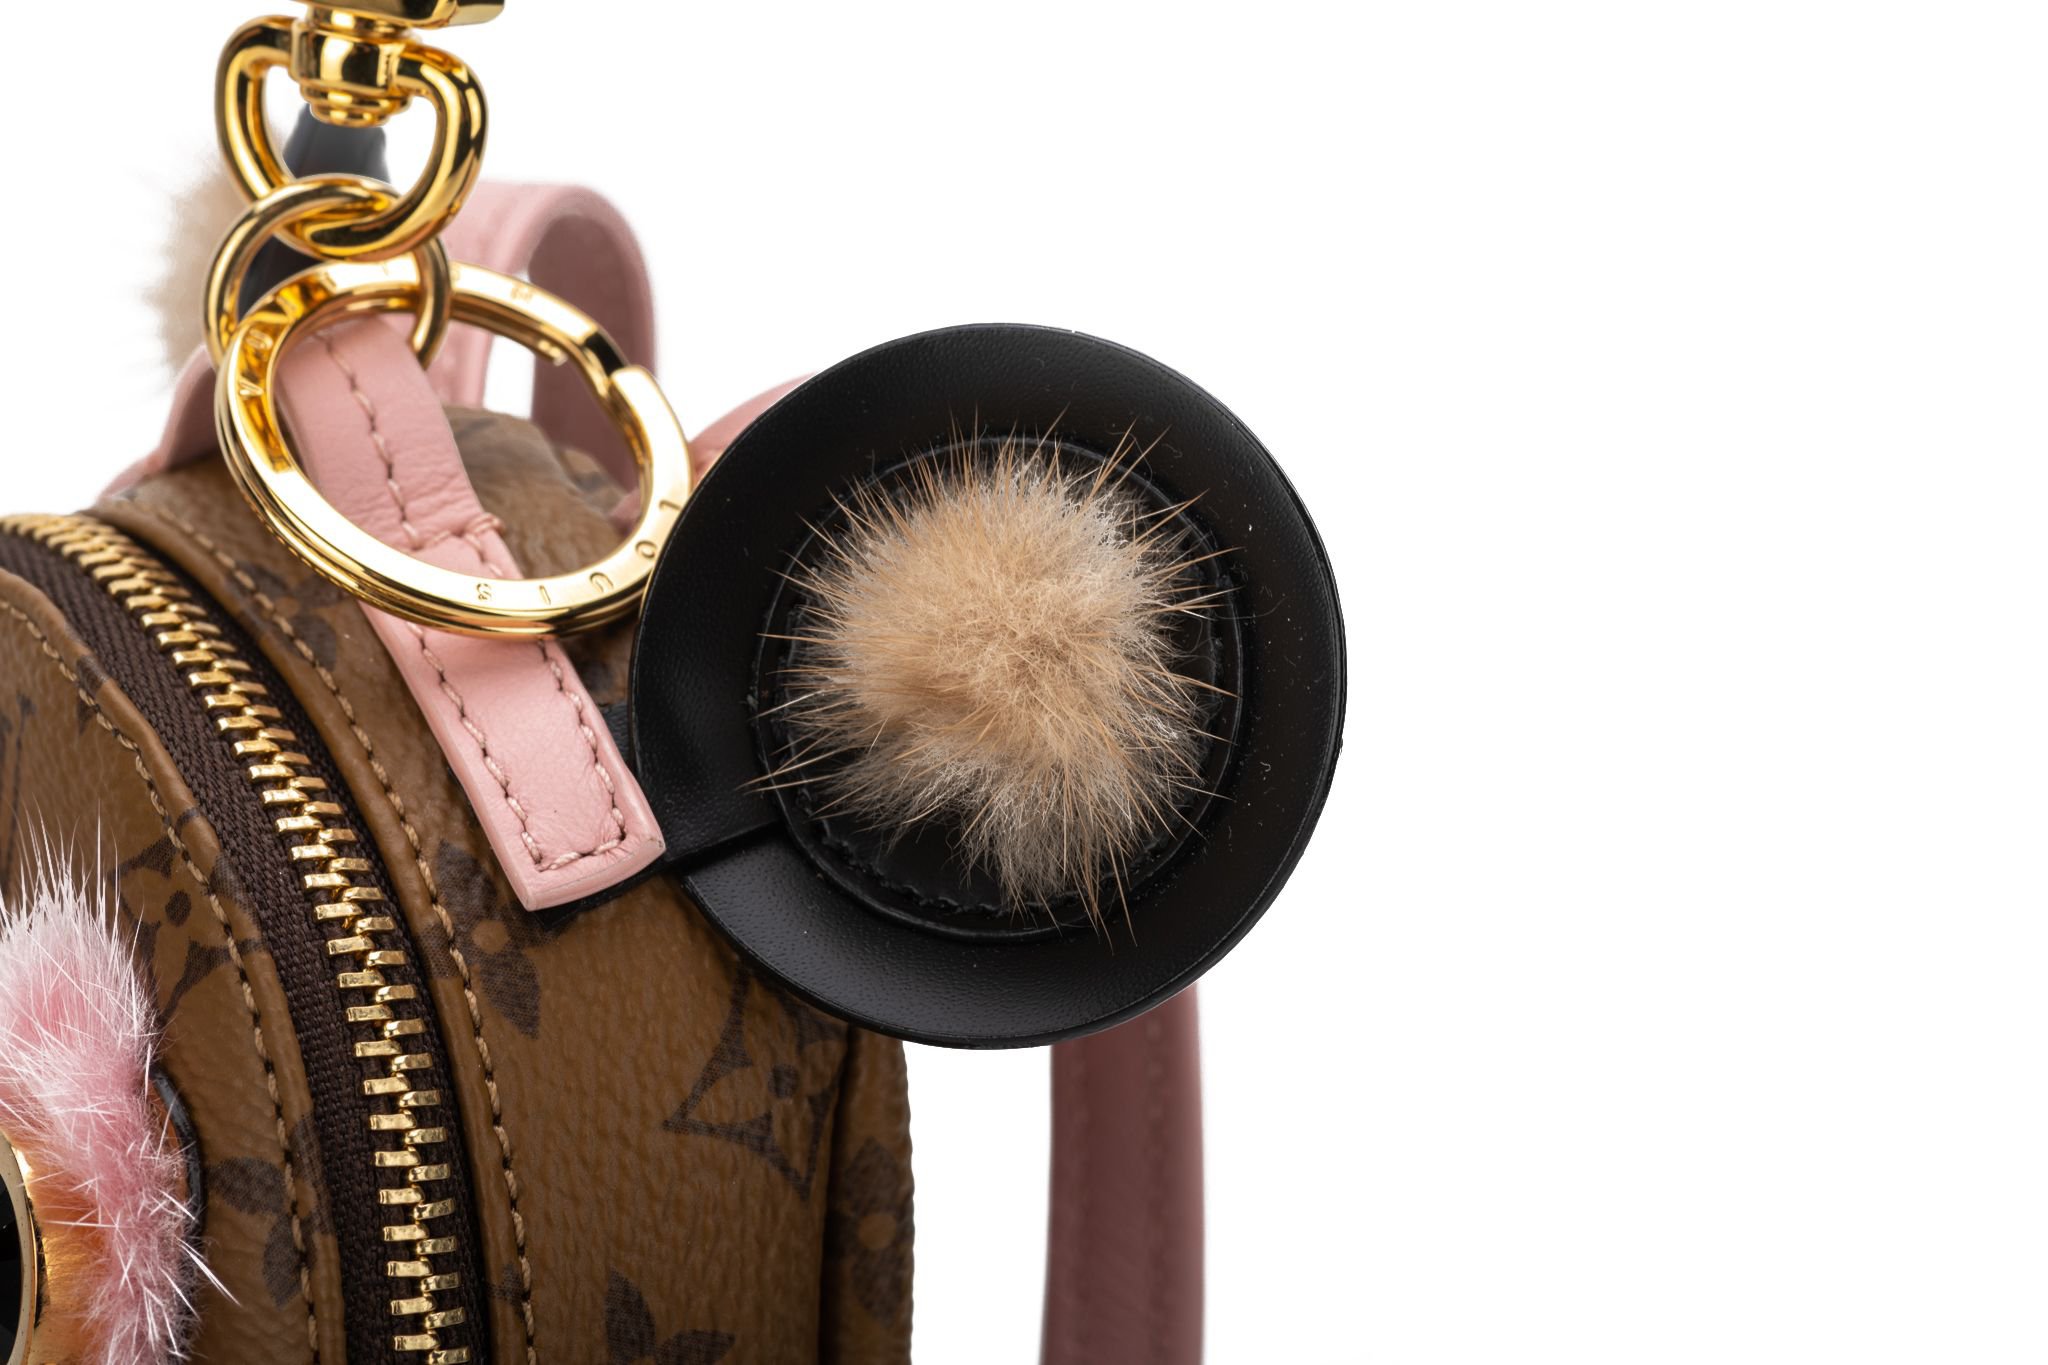 Louis Vuitton Minnie Key Chain/ Bag Charm